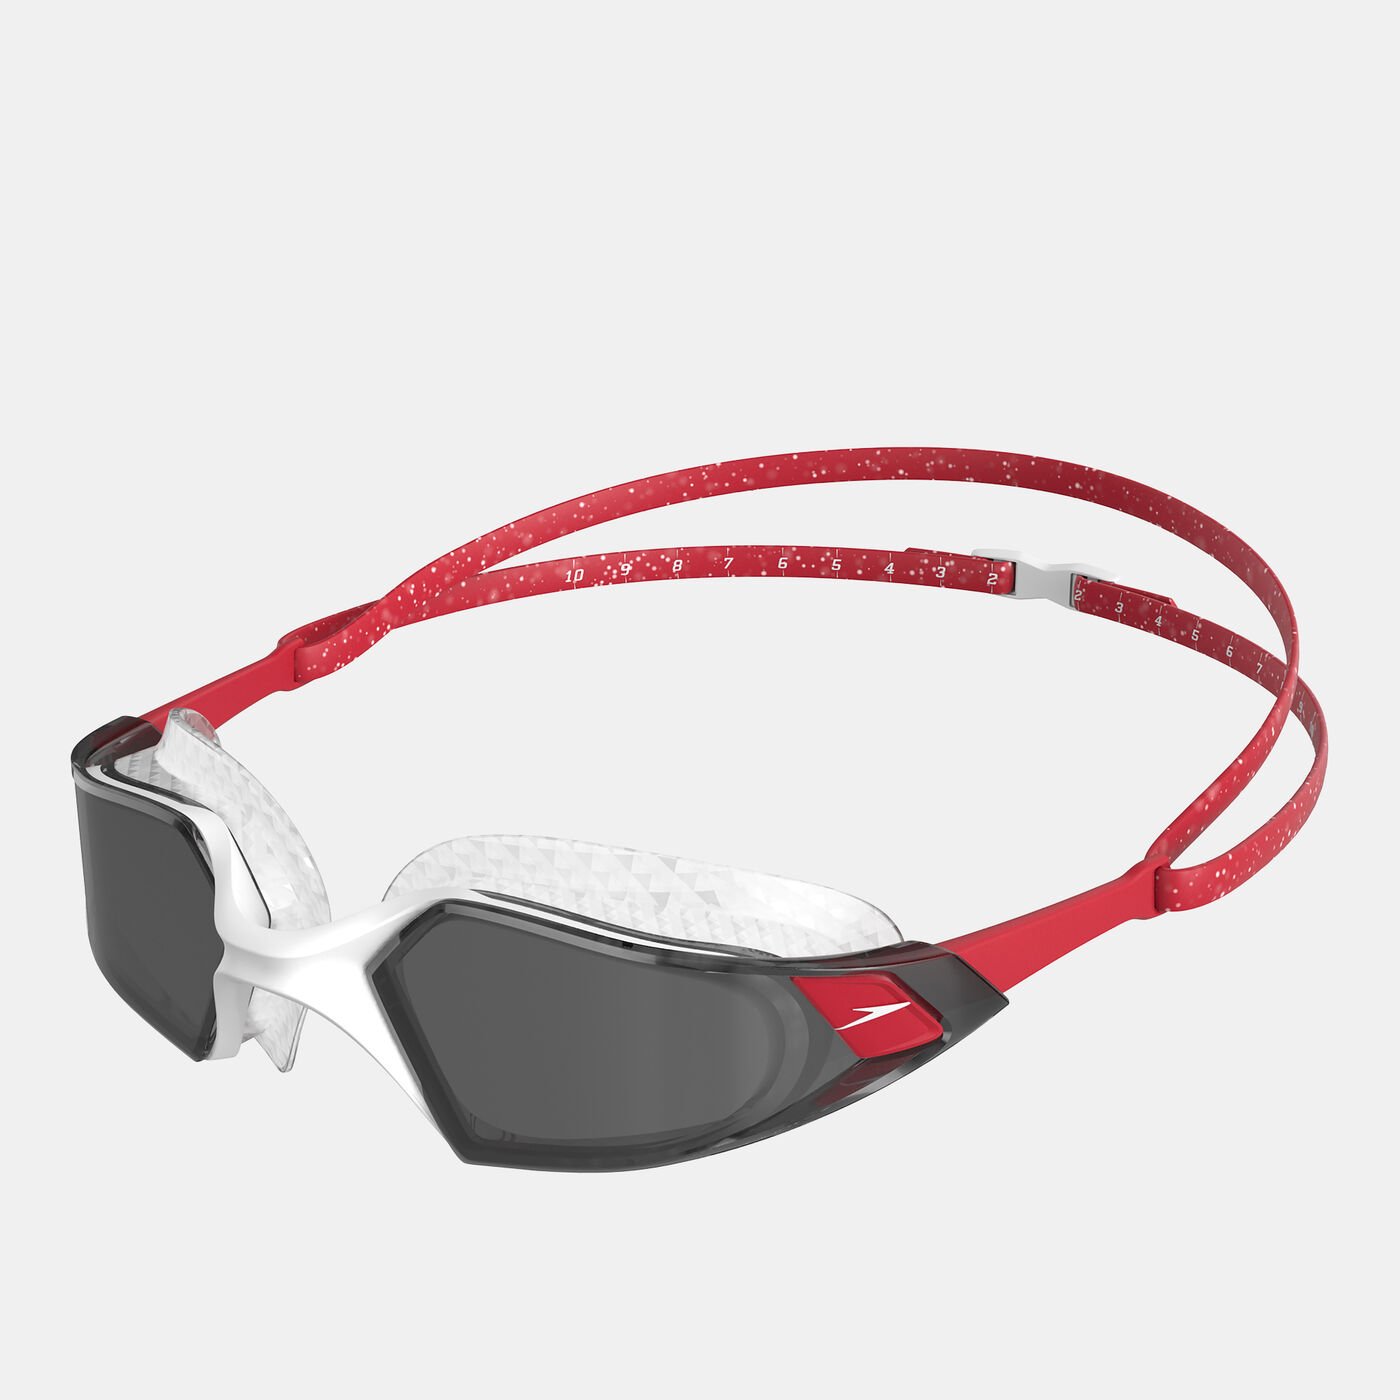 Aquapulse Pro Swimming Goggles